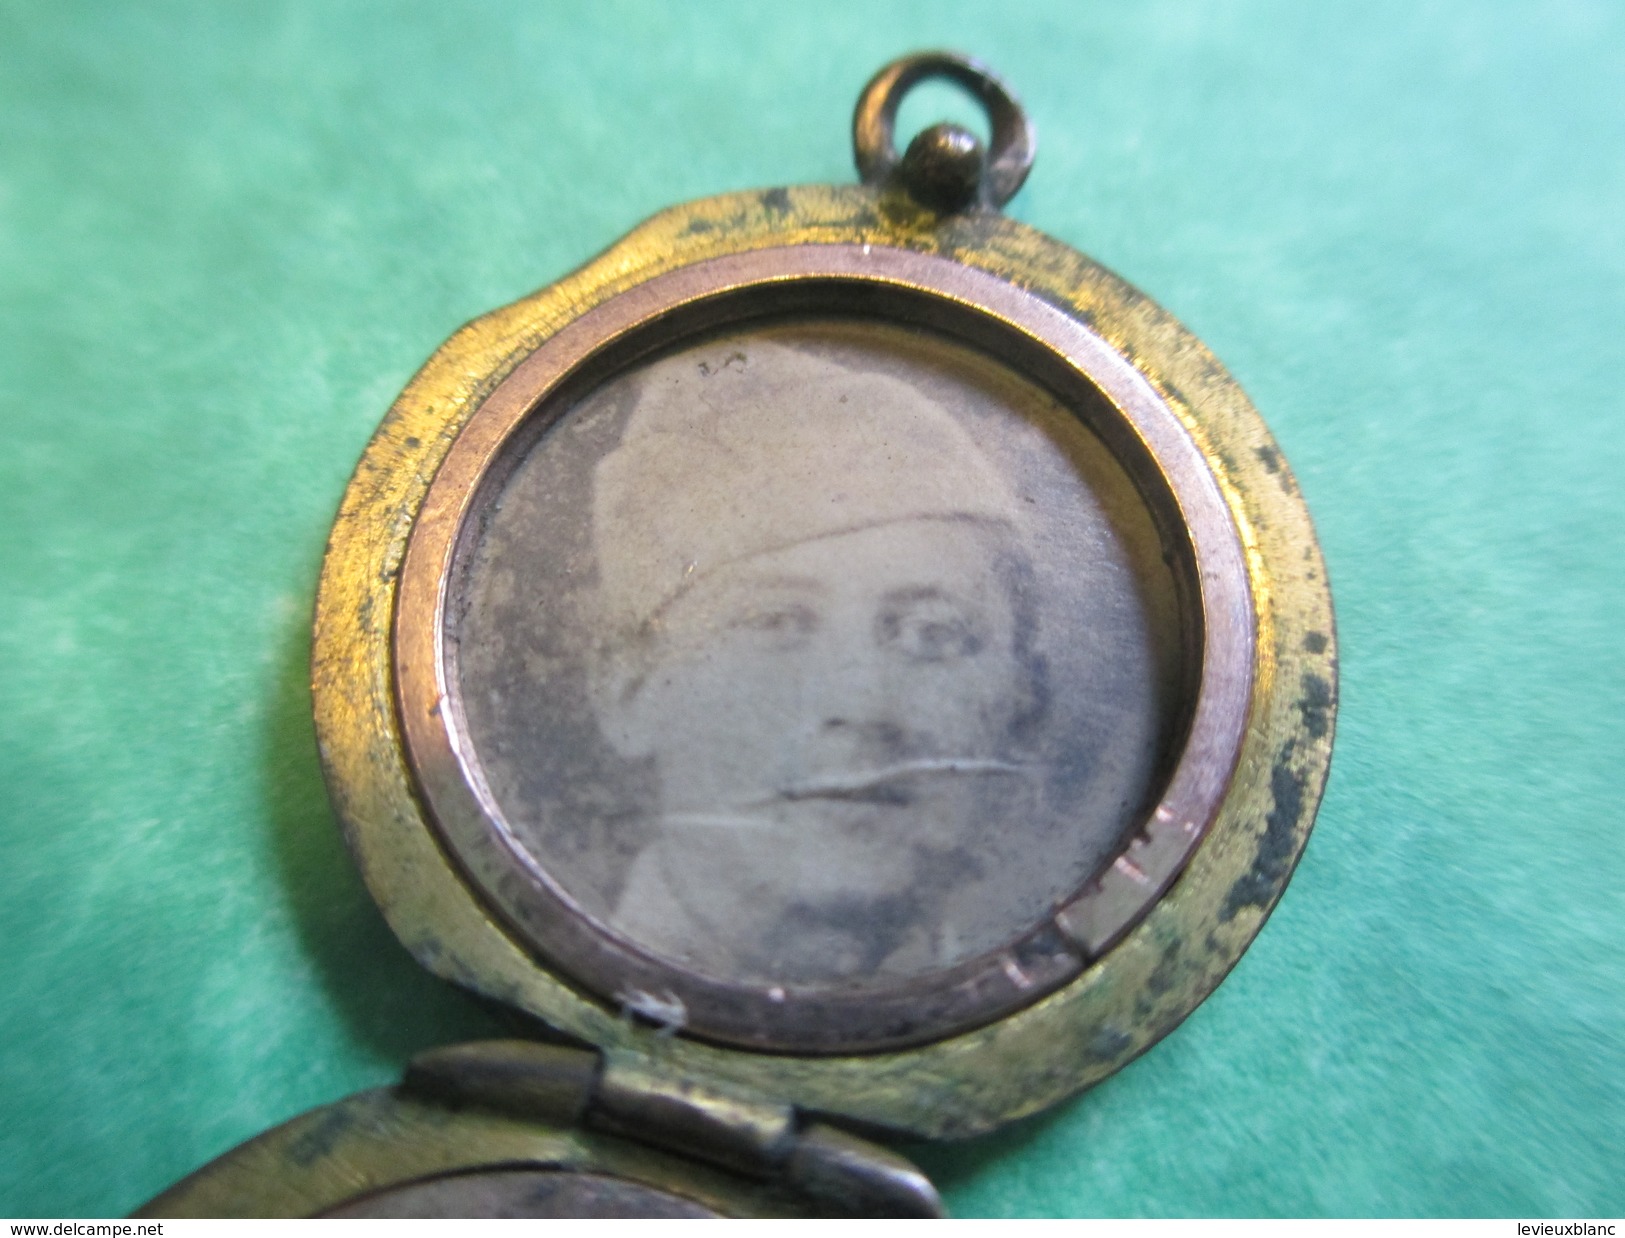 Bijou Fantaisie Ancien/Médaille/2 Photos à L'Intérieur/Pendentif Gousset Plaqué Or Pour Chaînette/ Vers 1914-18  BIJ28 - Anhänger